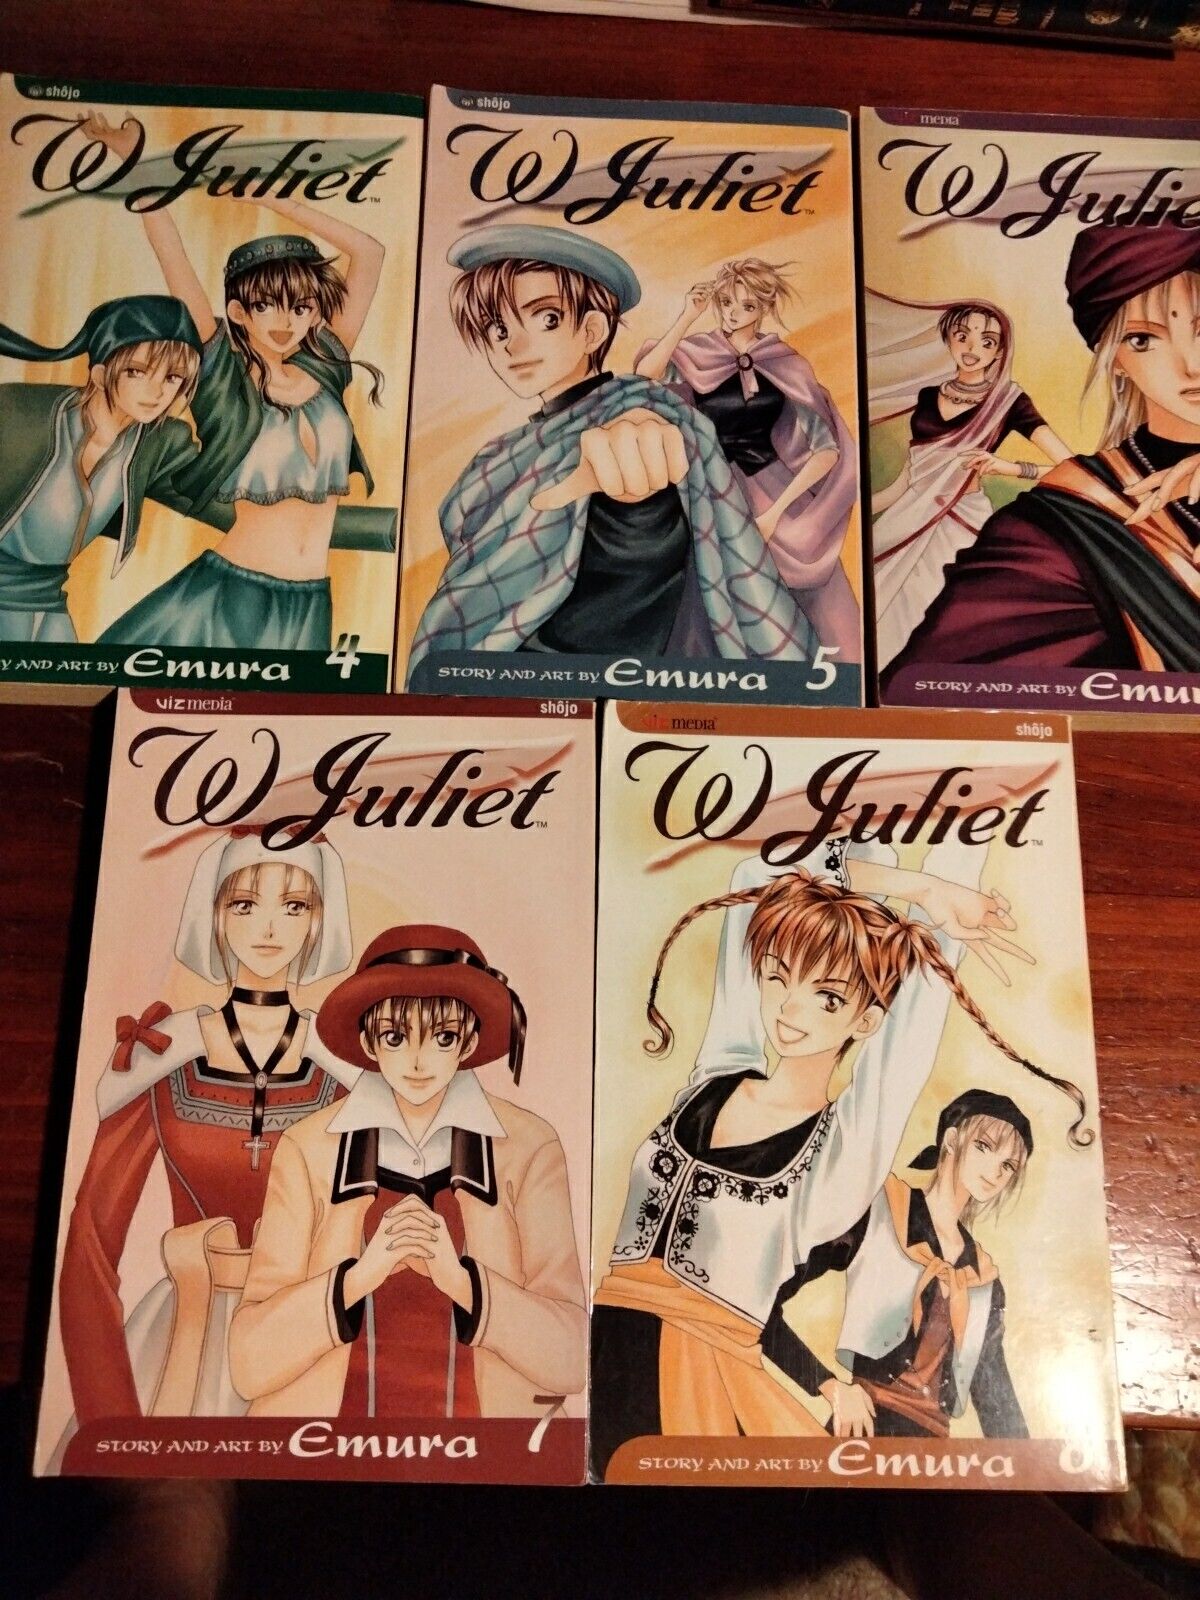 W Juliet Manga, Vol. 4-8